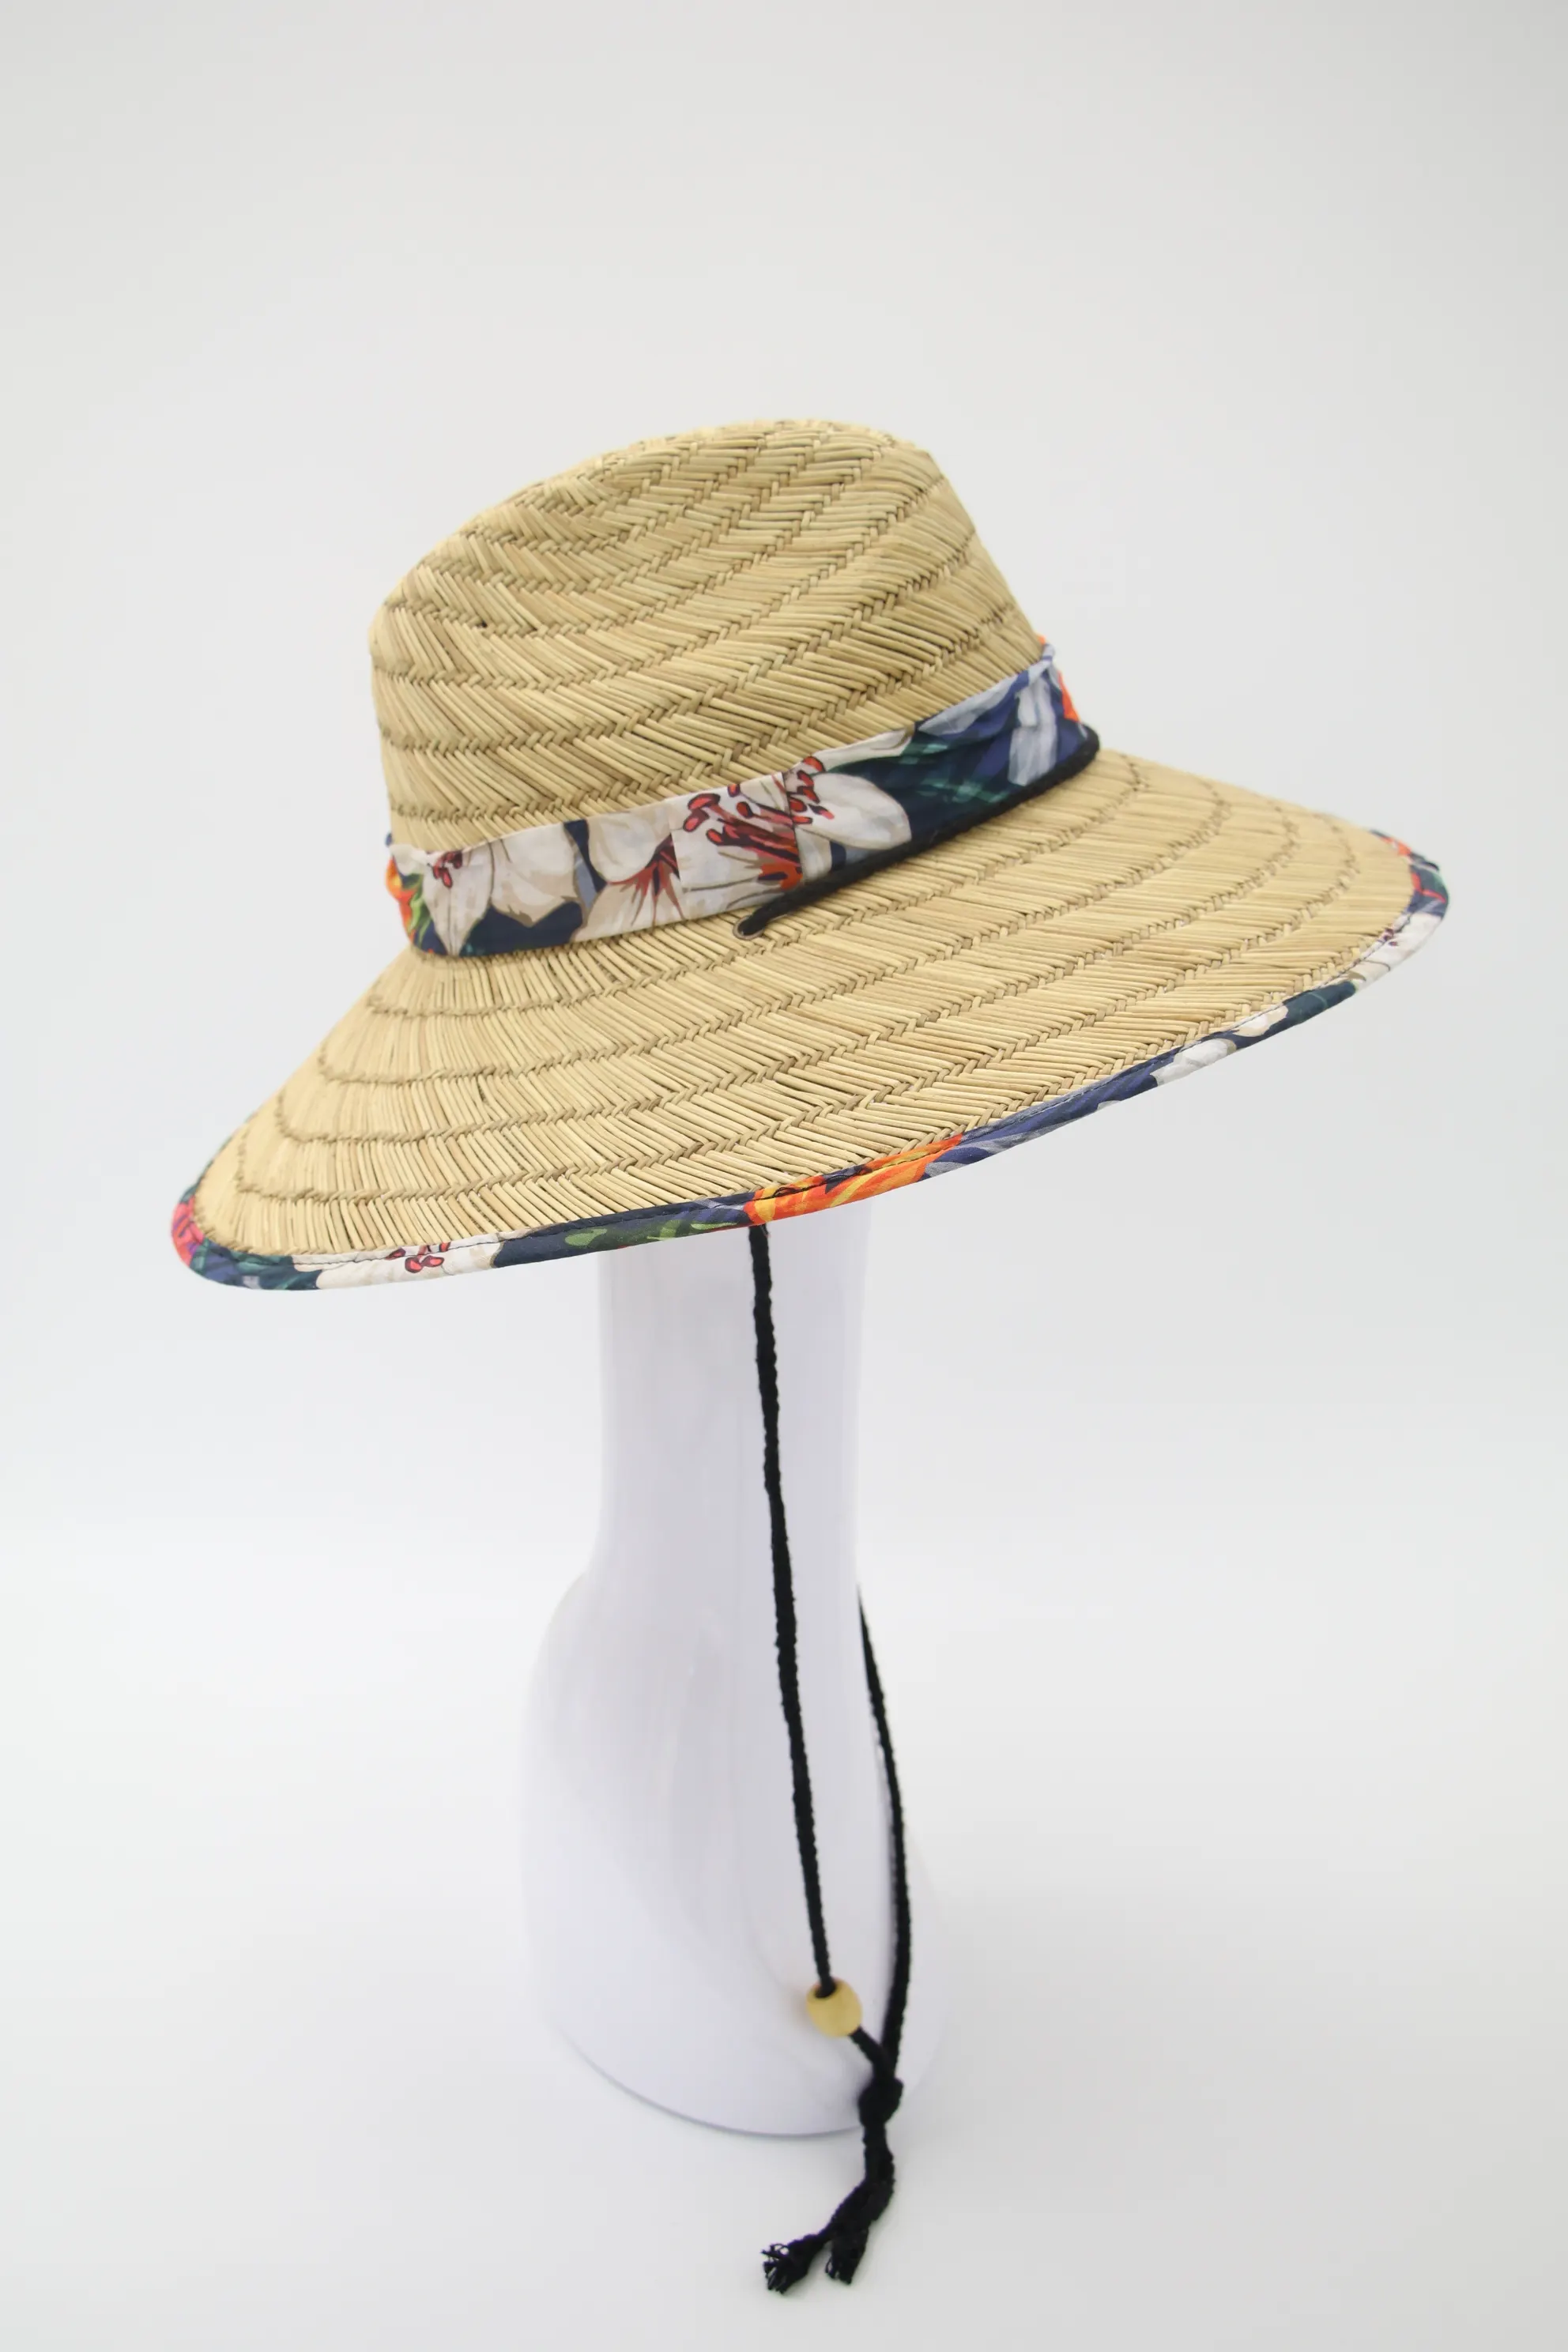 Venta al por mayor barato al aire libre sombrero de playa Mat hierba salvavidas sombrero vaquero sombrero de paja para Unisex